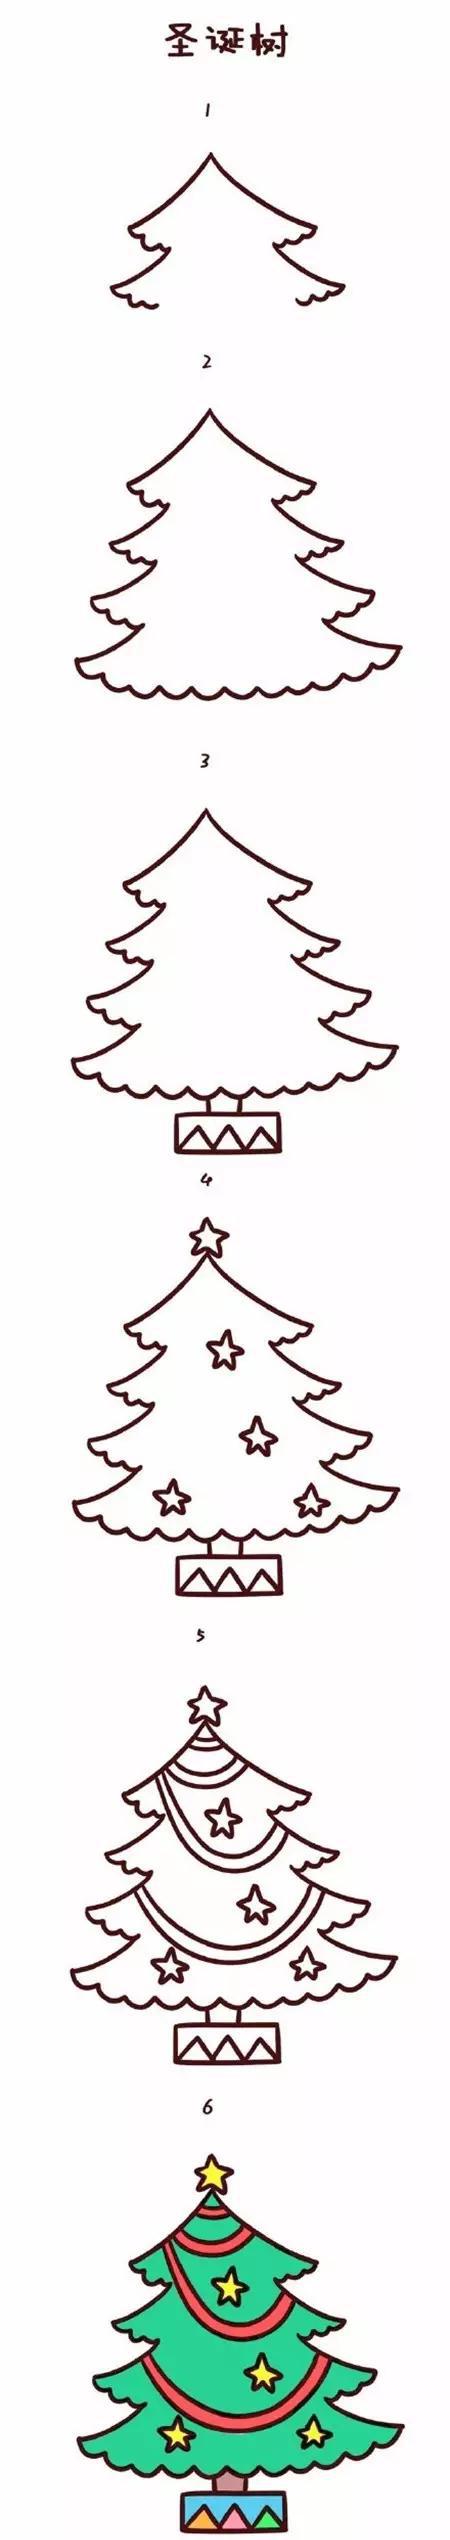 圣诞节图片大全简笔画图片 简单又可爱的圣诞节简笔画